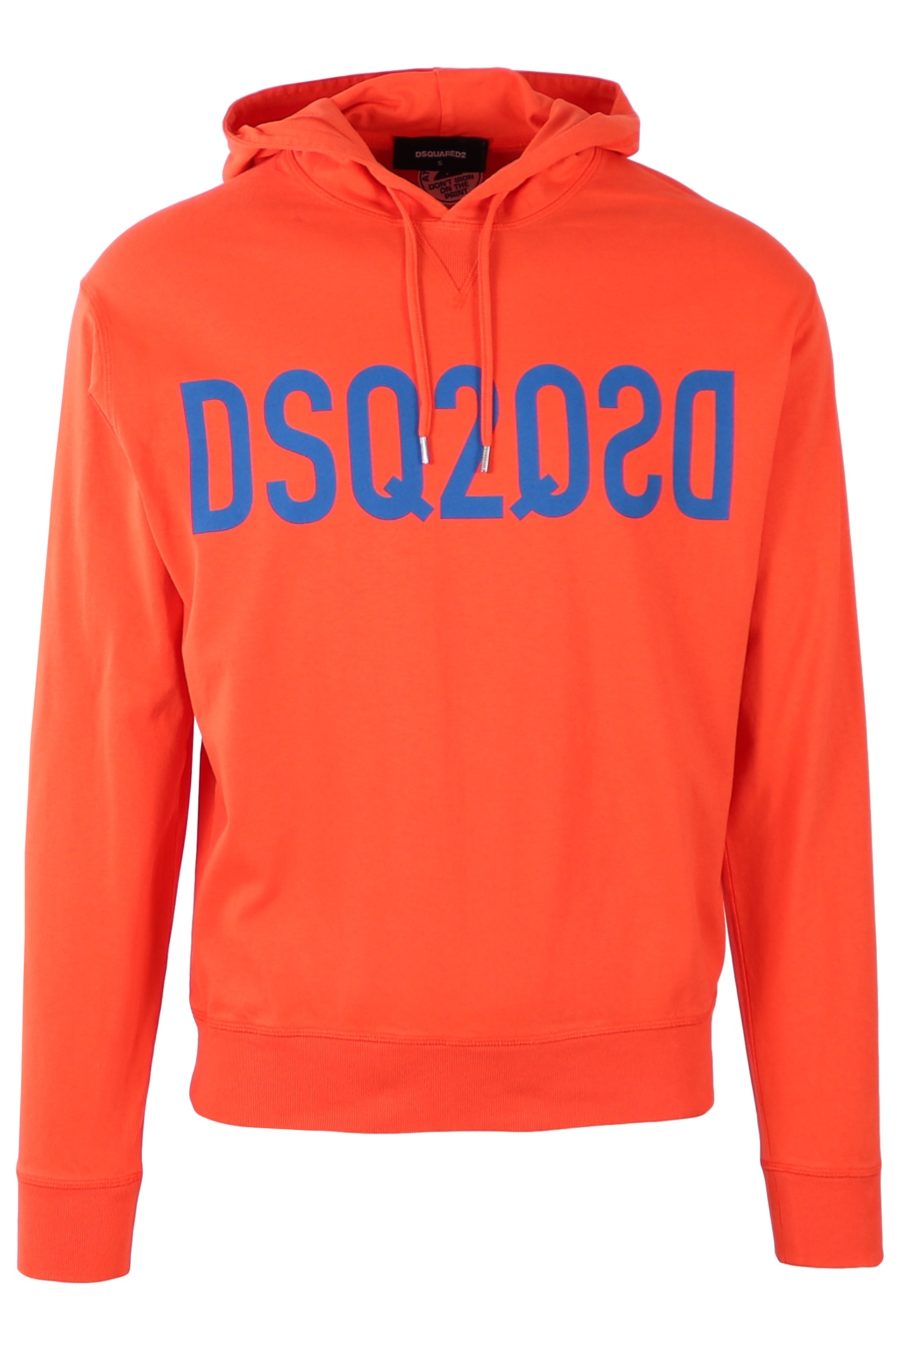 Sudadera Dsquared2 naranja con logo azul - e8f5f1934ec26518f9328906404ef67dac07882b